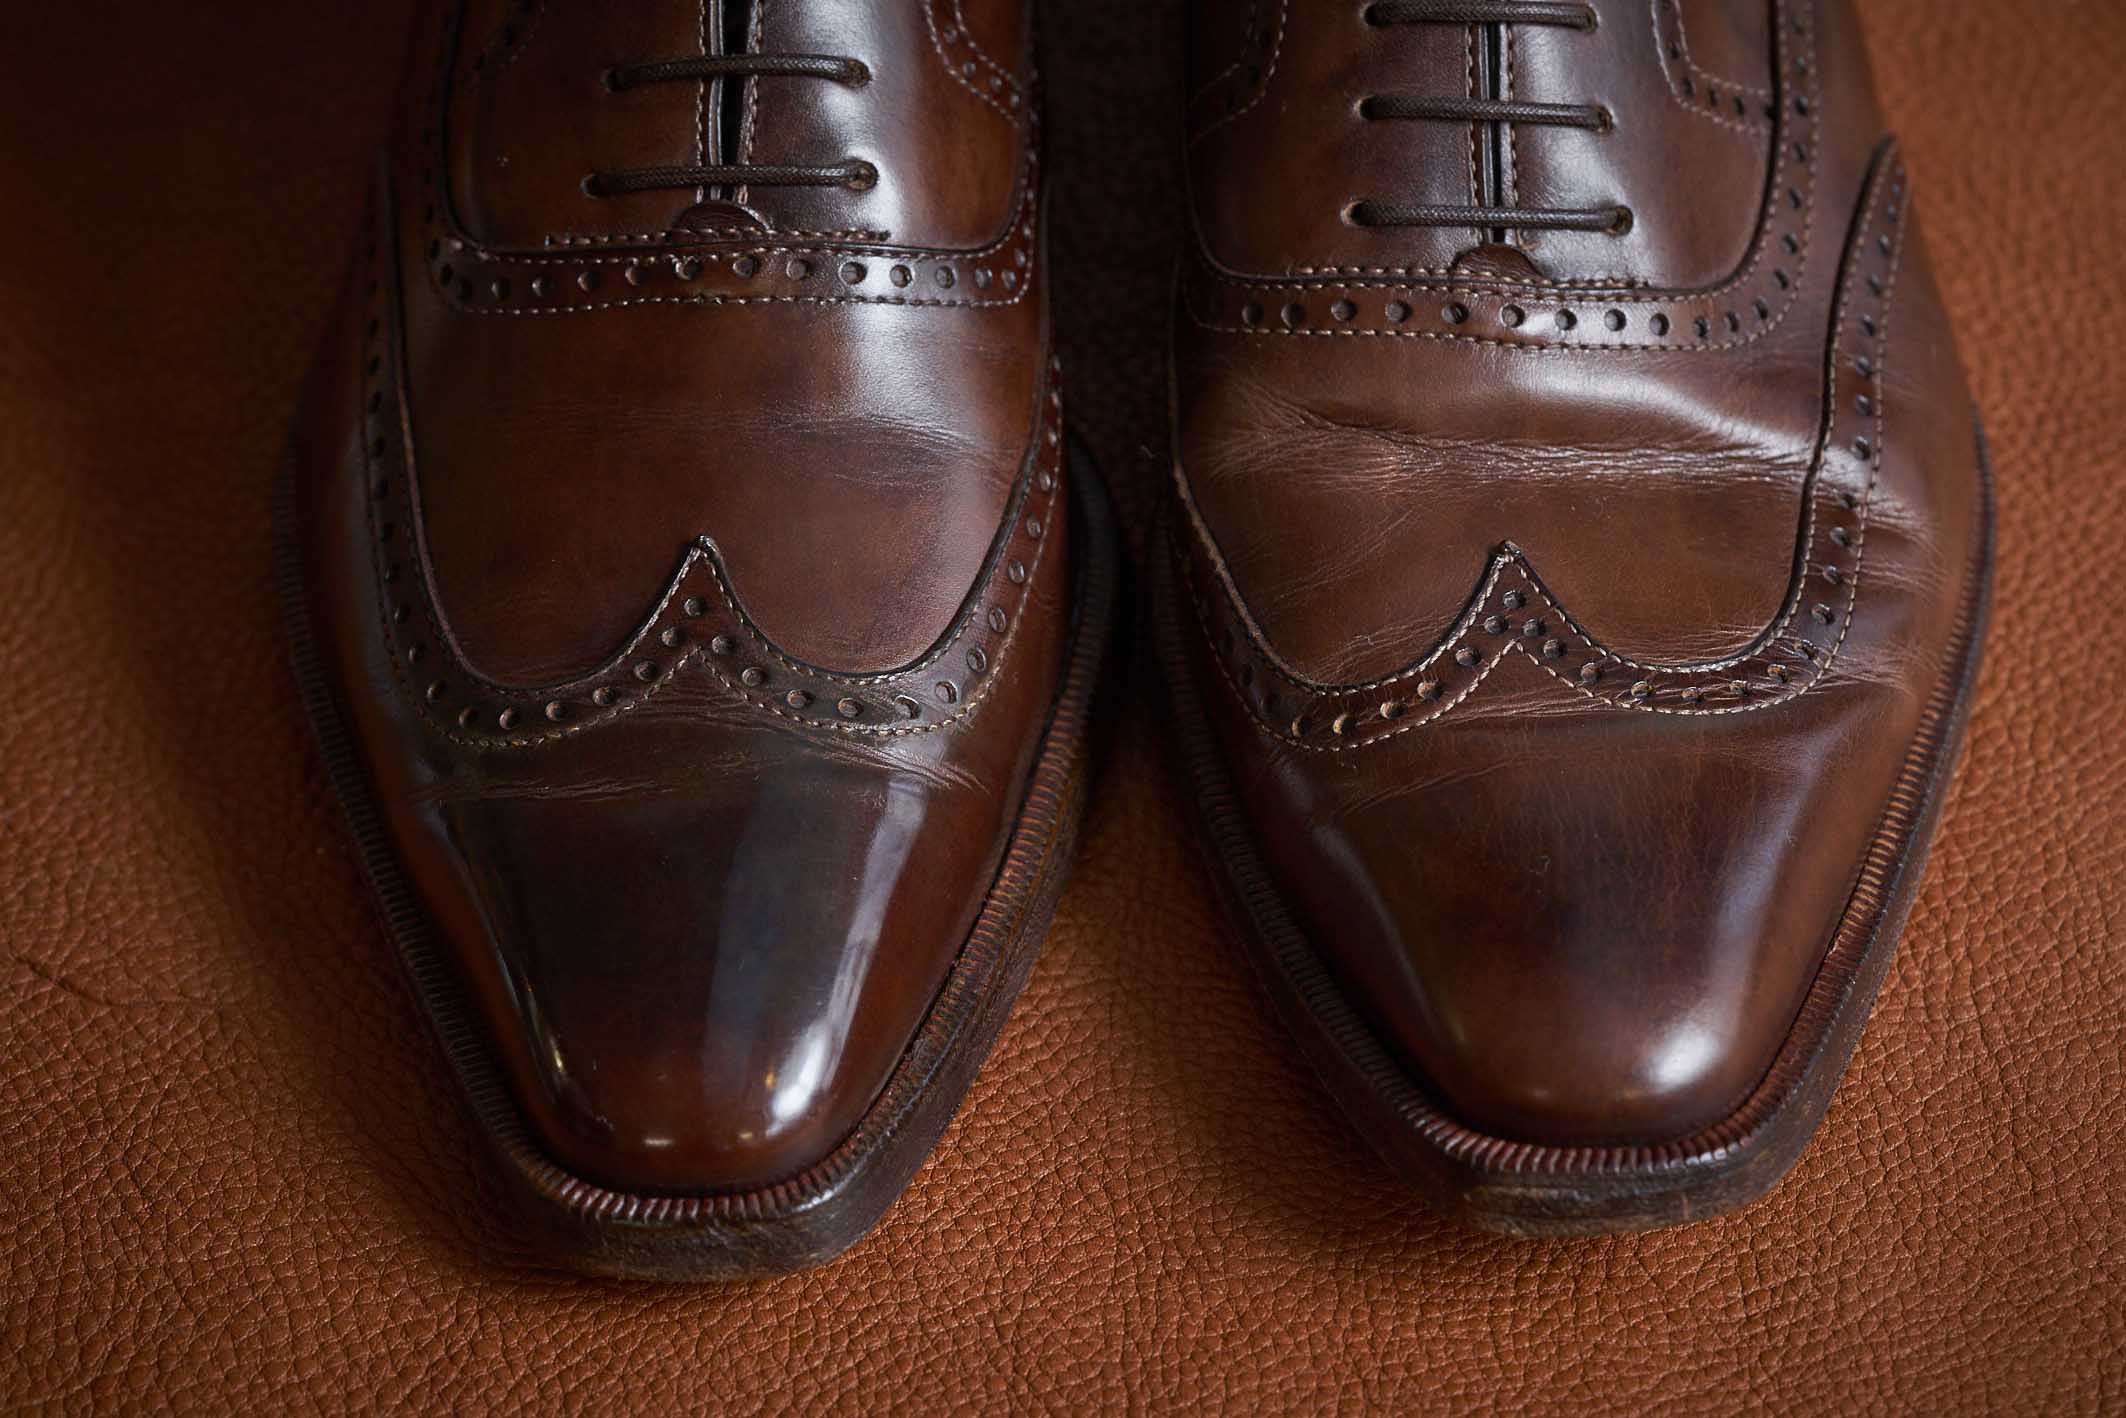 左がつま先を「ハイシャイン」したもので、右が通常の水溶性クリームだけで靴磨きをしたもの。輝きが違う。